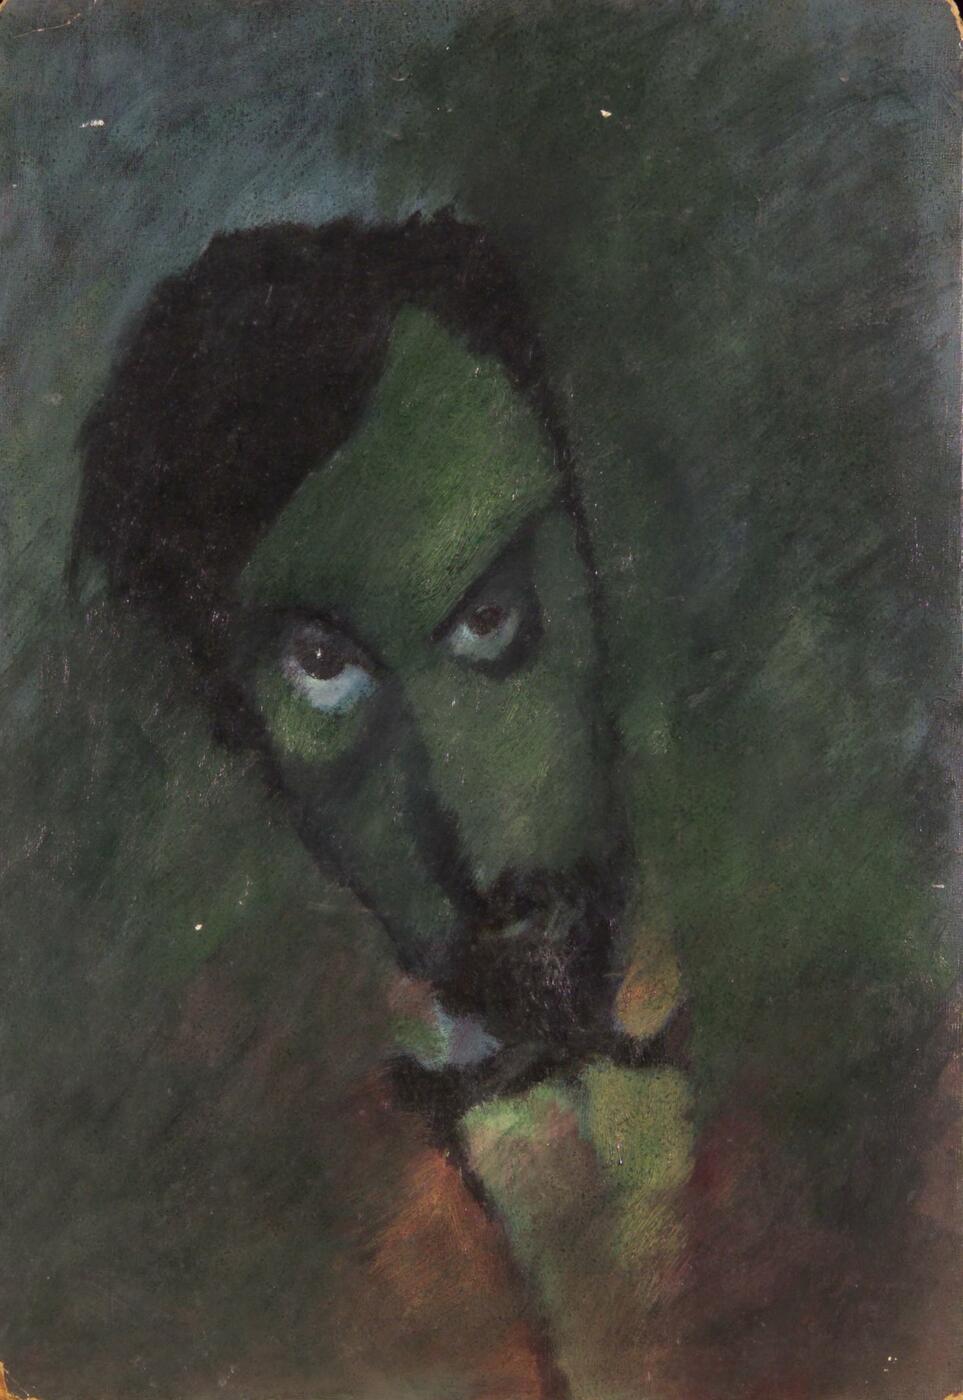 Self-Portrait in Green